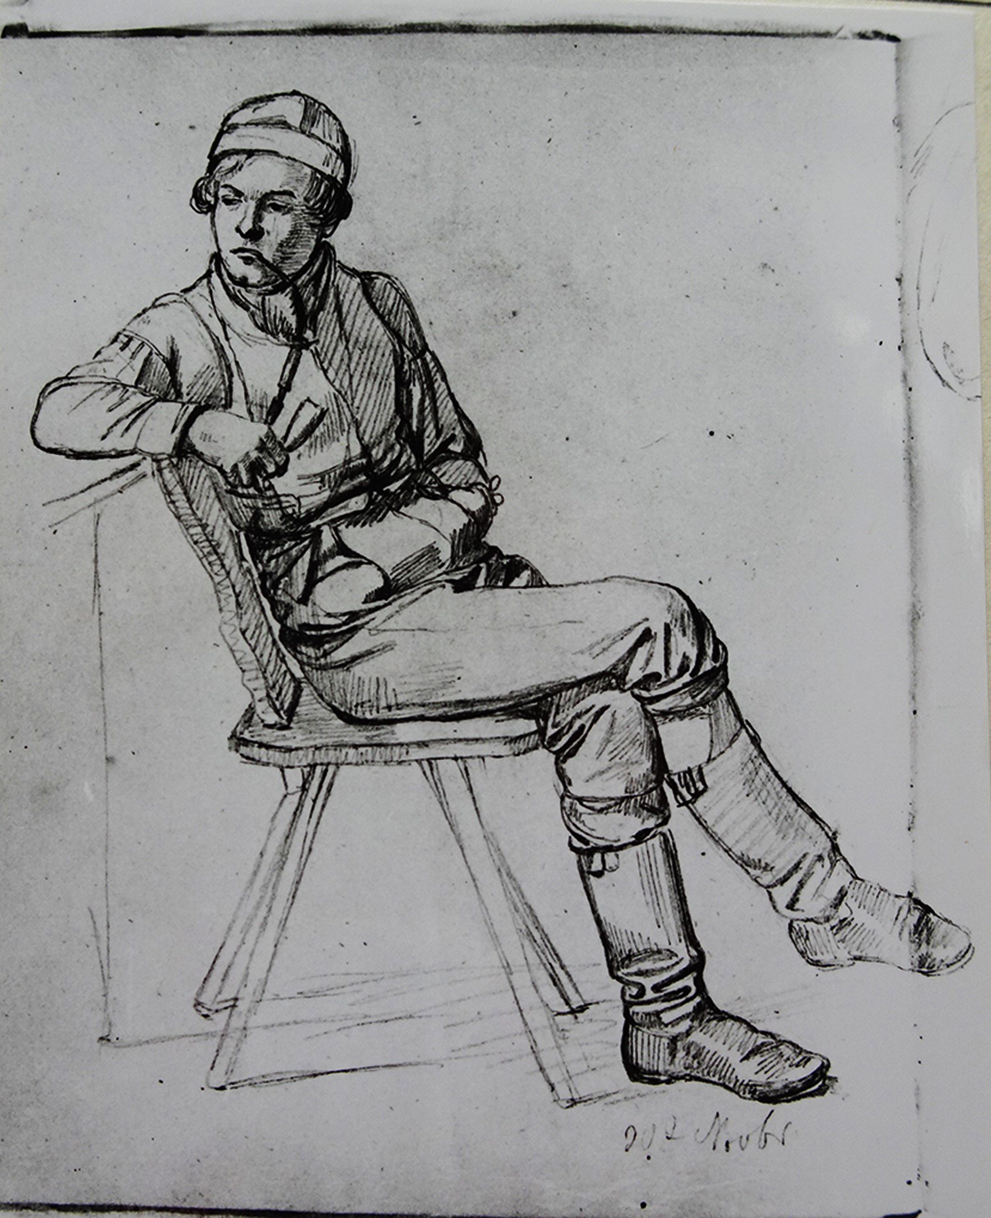 Ludwig Most, Studium gościa palącego fajkę, 30 listopada 1830, ołówek, papier welinowy, rysunek w szkicowniku nr II, karta 3, odwrocie, Muzeum Narodowe w Szczecinie